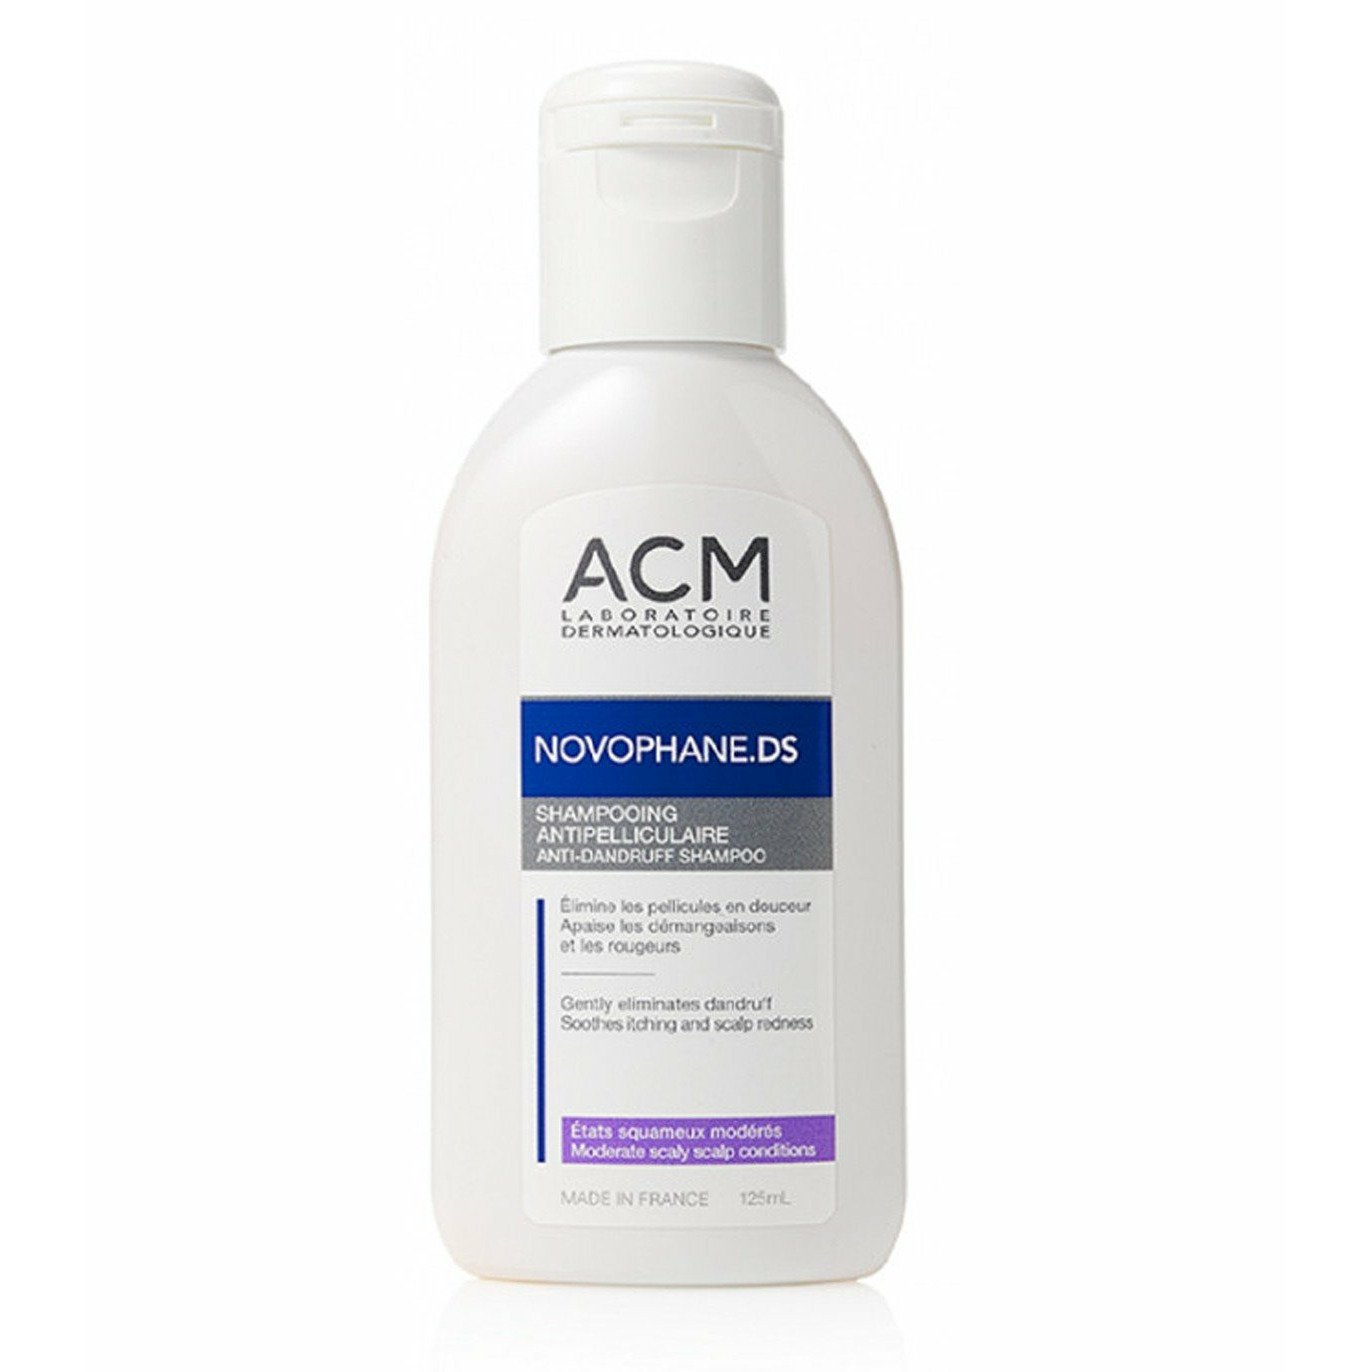 Novophane Ds shampooing Antipelliculaire Etats Squameux Modérés Flacon 125ml De Acm